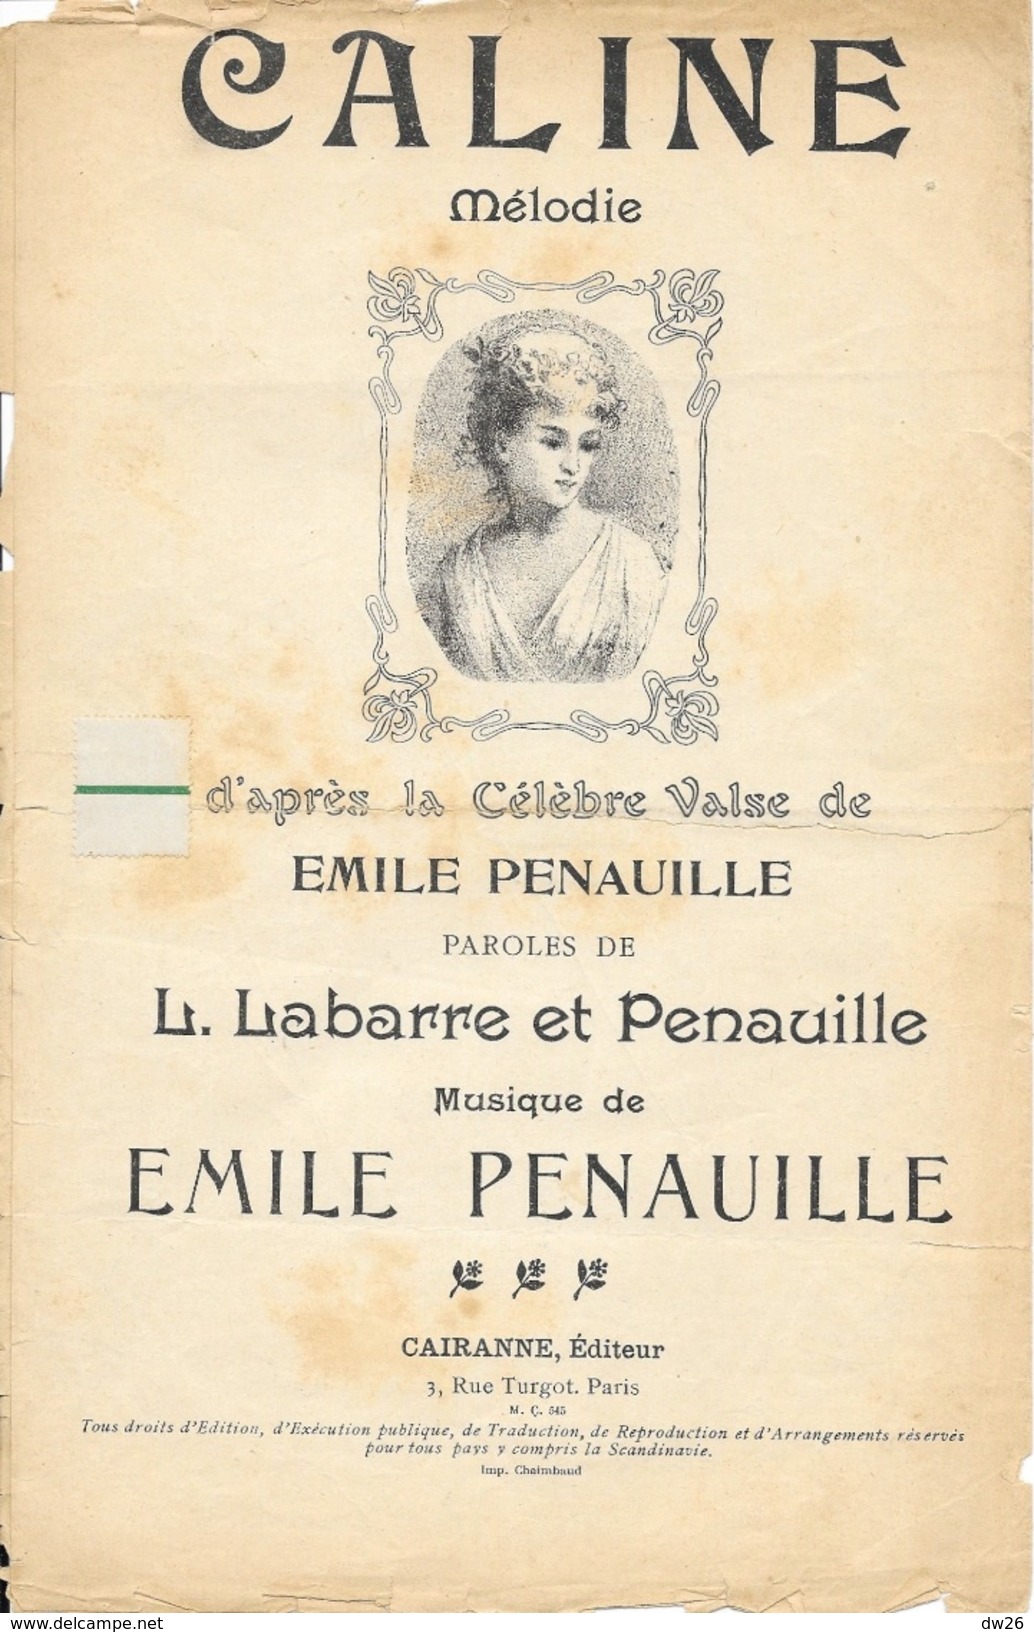 Partition: Caline (Mélodie, Valse) - Paroles De L. Labarre Et Pénauille, Musique Emile Pénauille - Partitions Musicales Anciennes